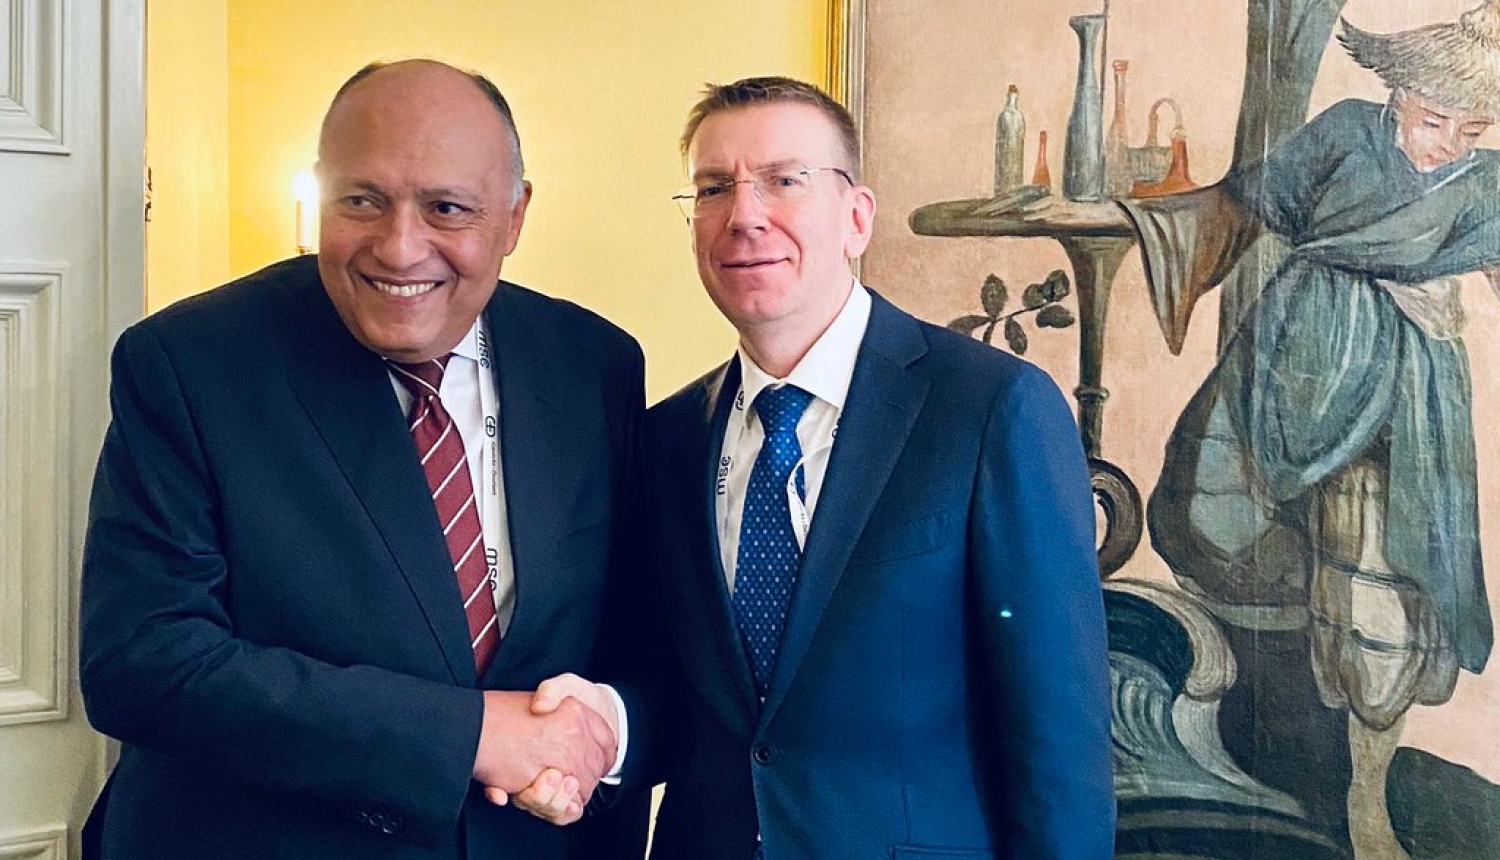 Tiekoties ar Ēģiptes ārlietu ministru, E. Rinkēvičs apspriež Latvijas-Ēģiptes sadarbību un situāciju Lībijā